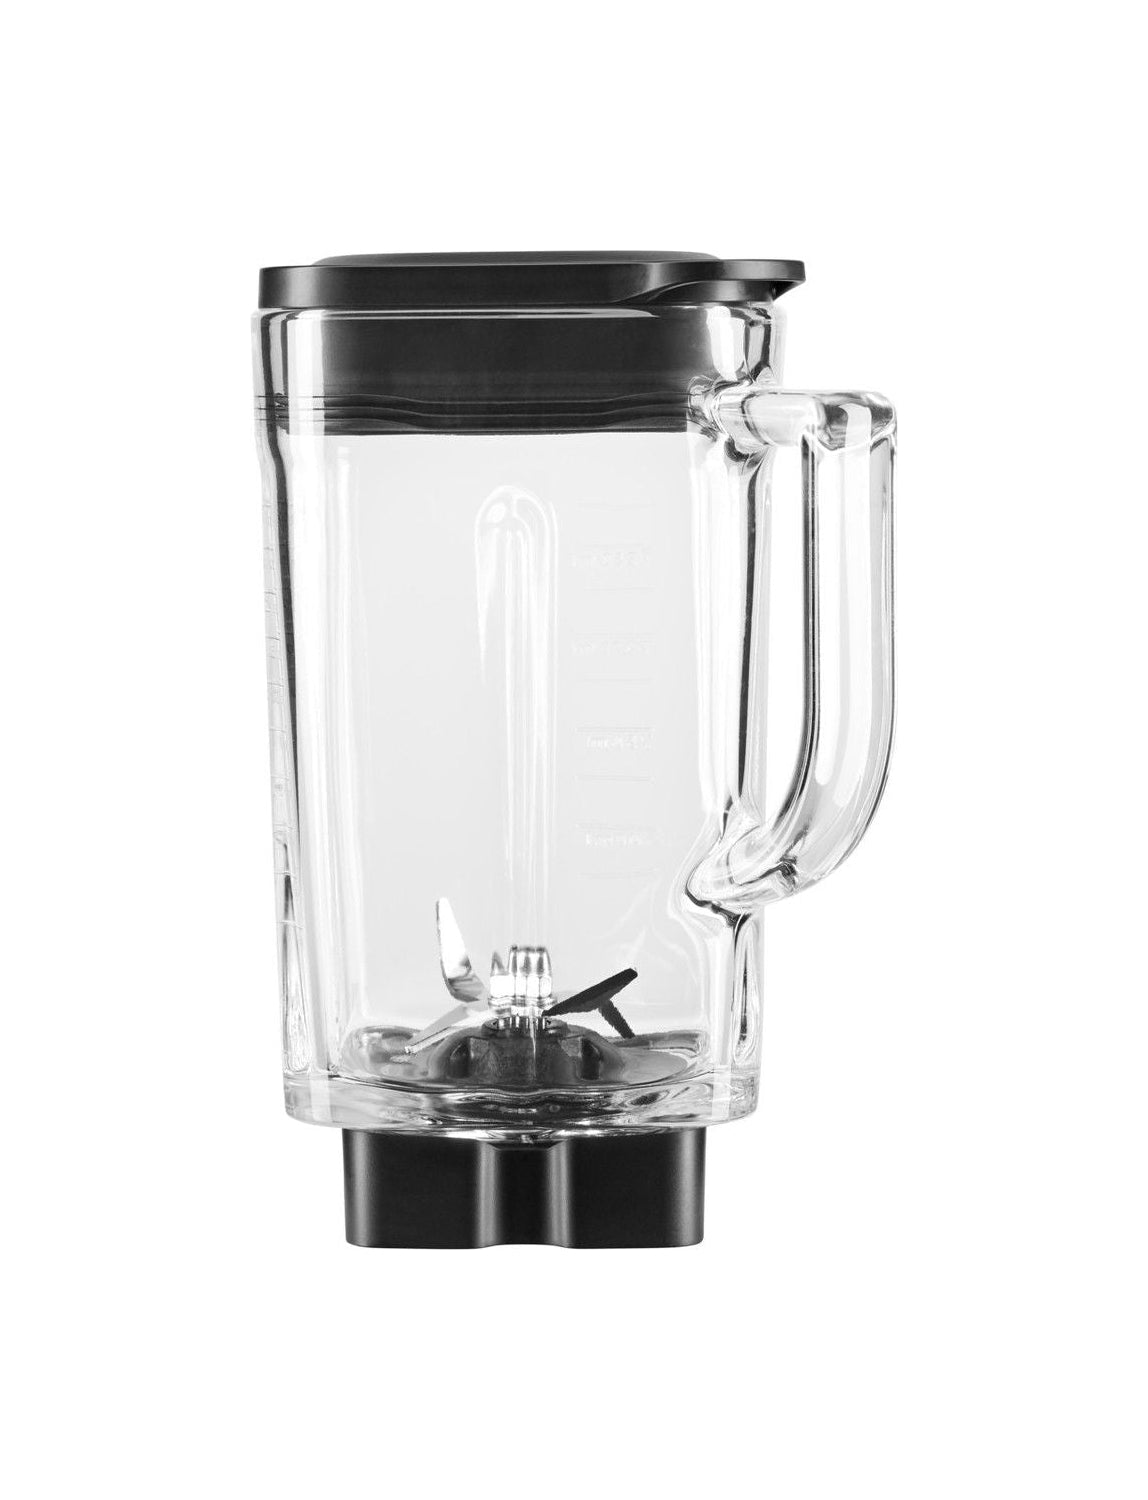 Kitchen Aid 5 Ksb2048 Jga-Behälter für Artisan K400 Mixer Glas, 1,4 L